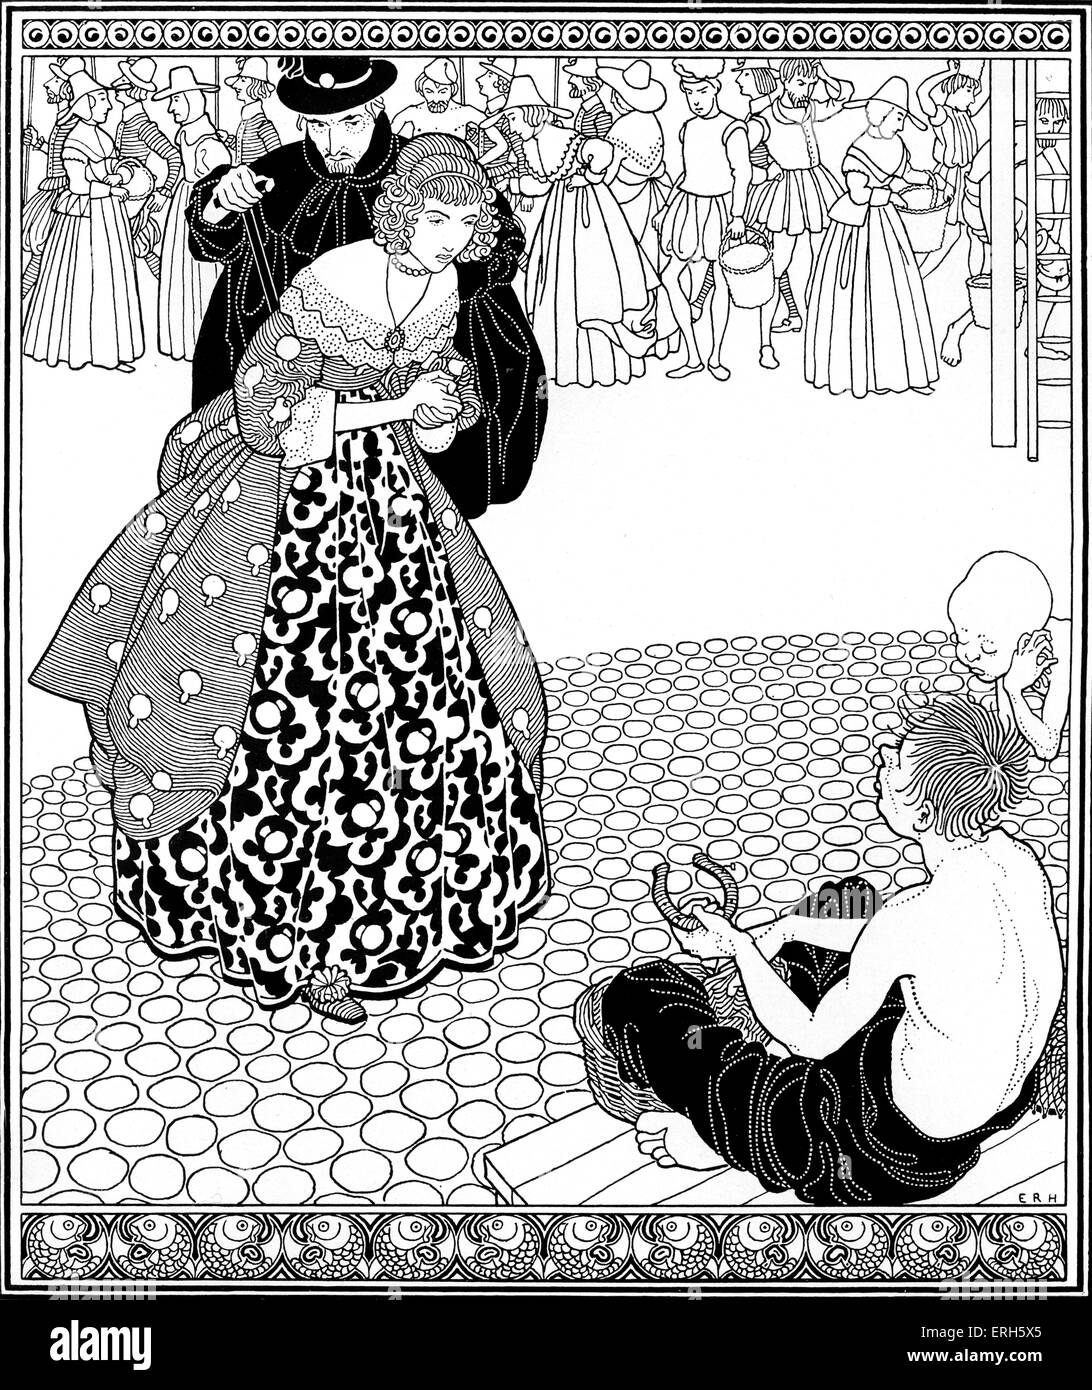 Das arme Ding von Stevenson, Illustration von E. R. Herman (Datum unbekannt). Von "Fabeln" von RL Stevenson, Stockfoto